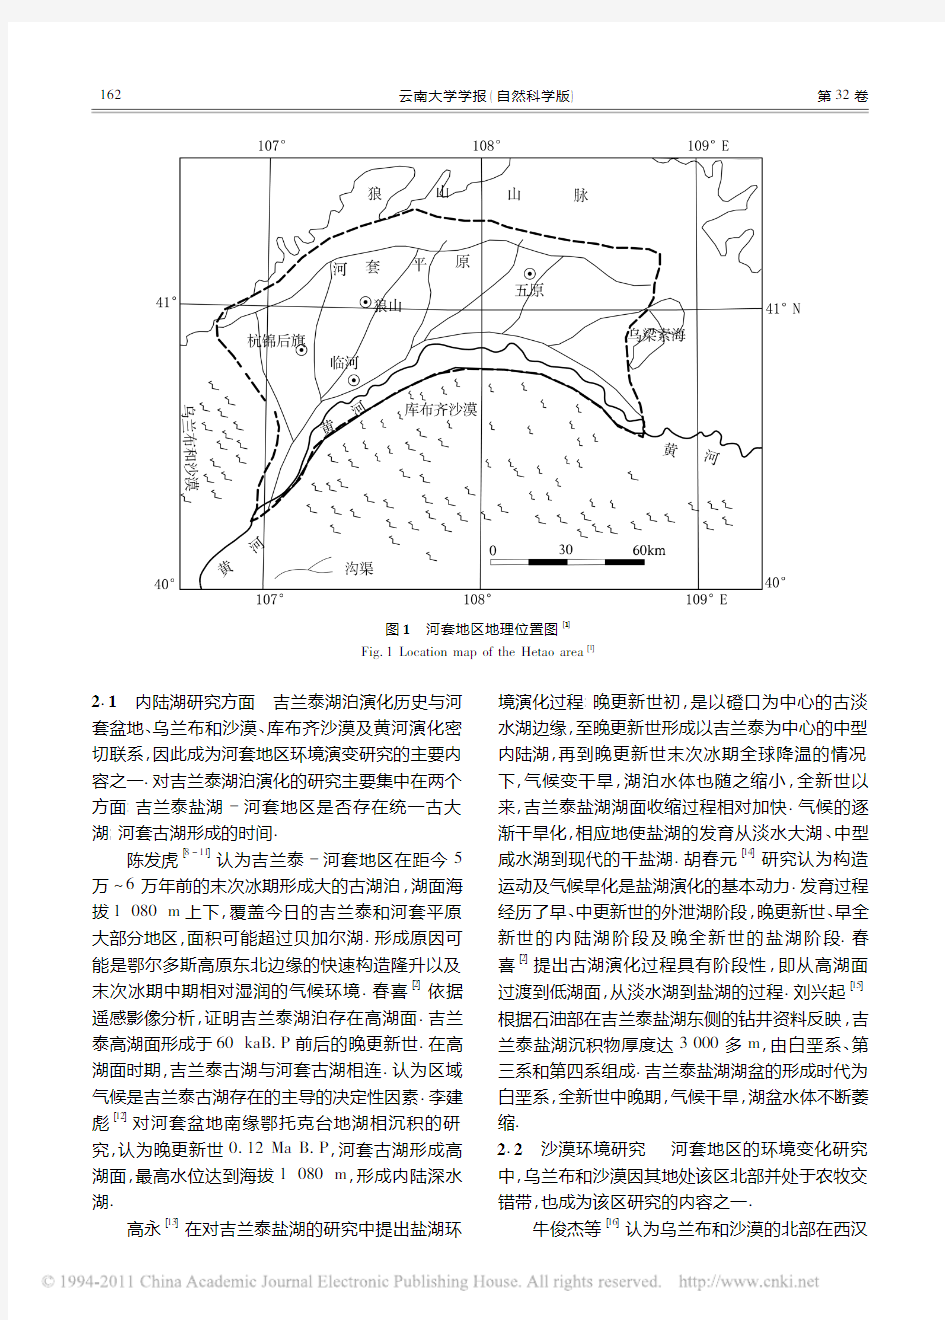 内蒙古河套地区第四纪环境演变研究进展